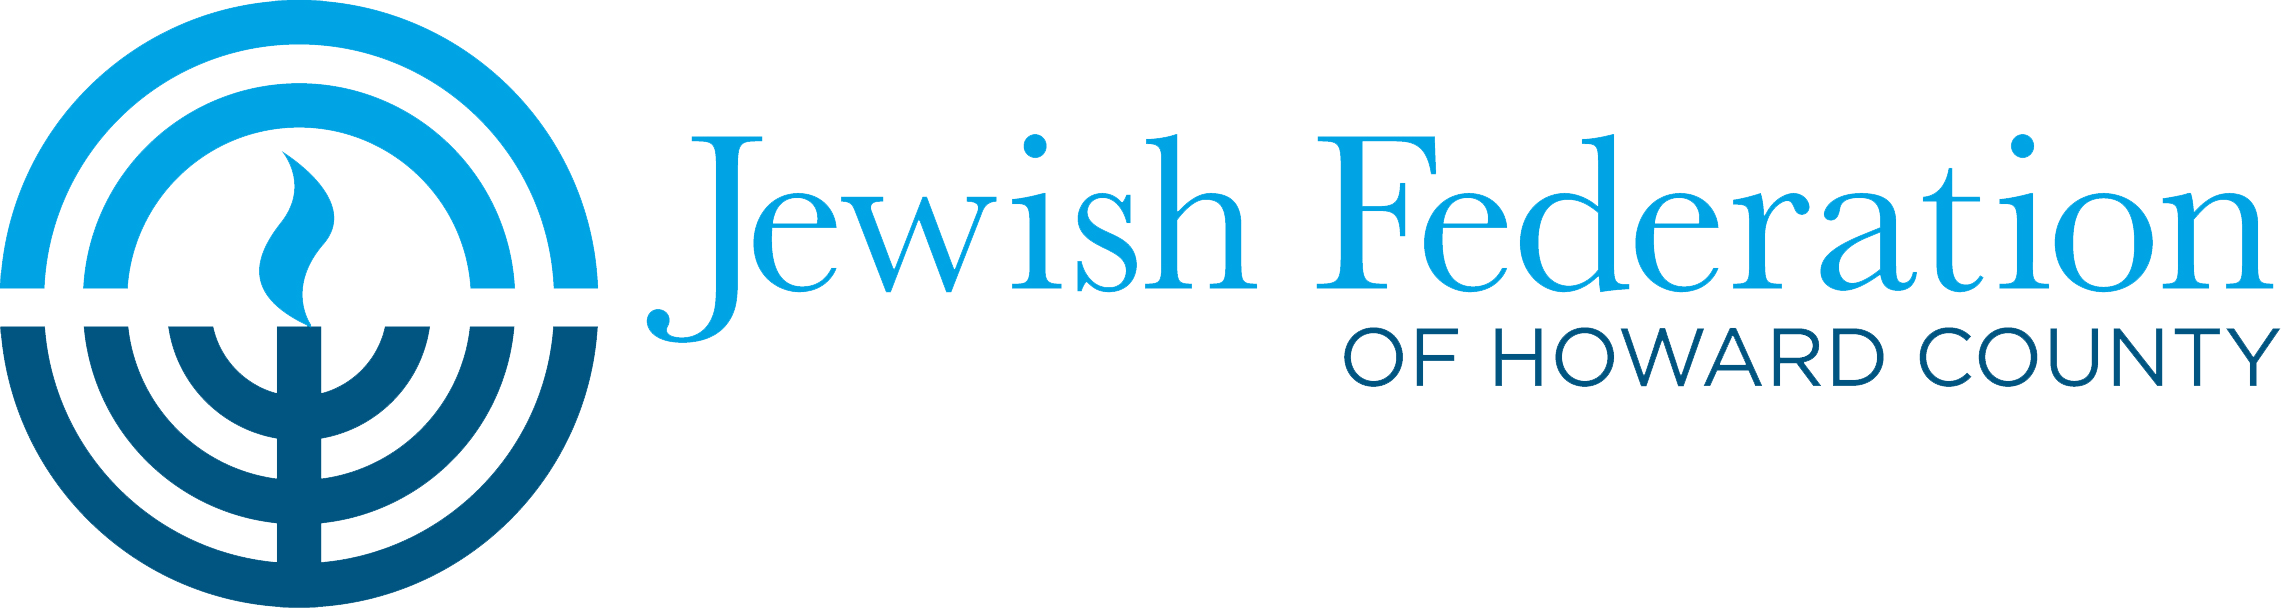 Jewish Federation of Howard County logo